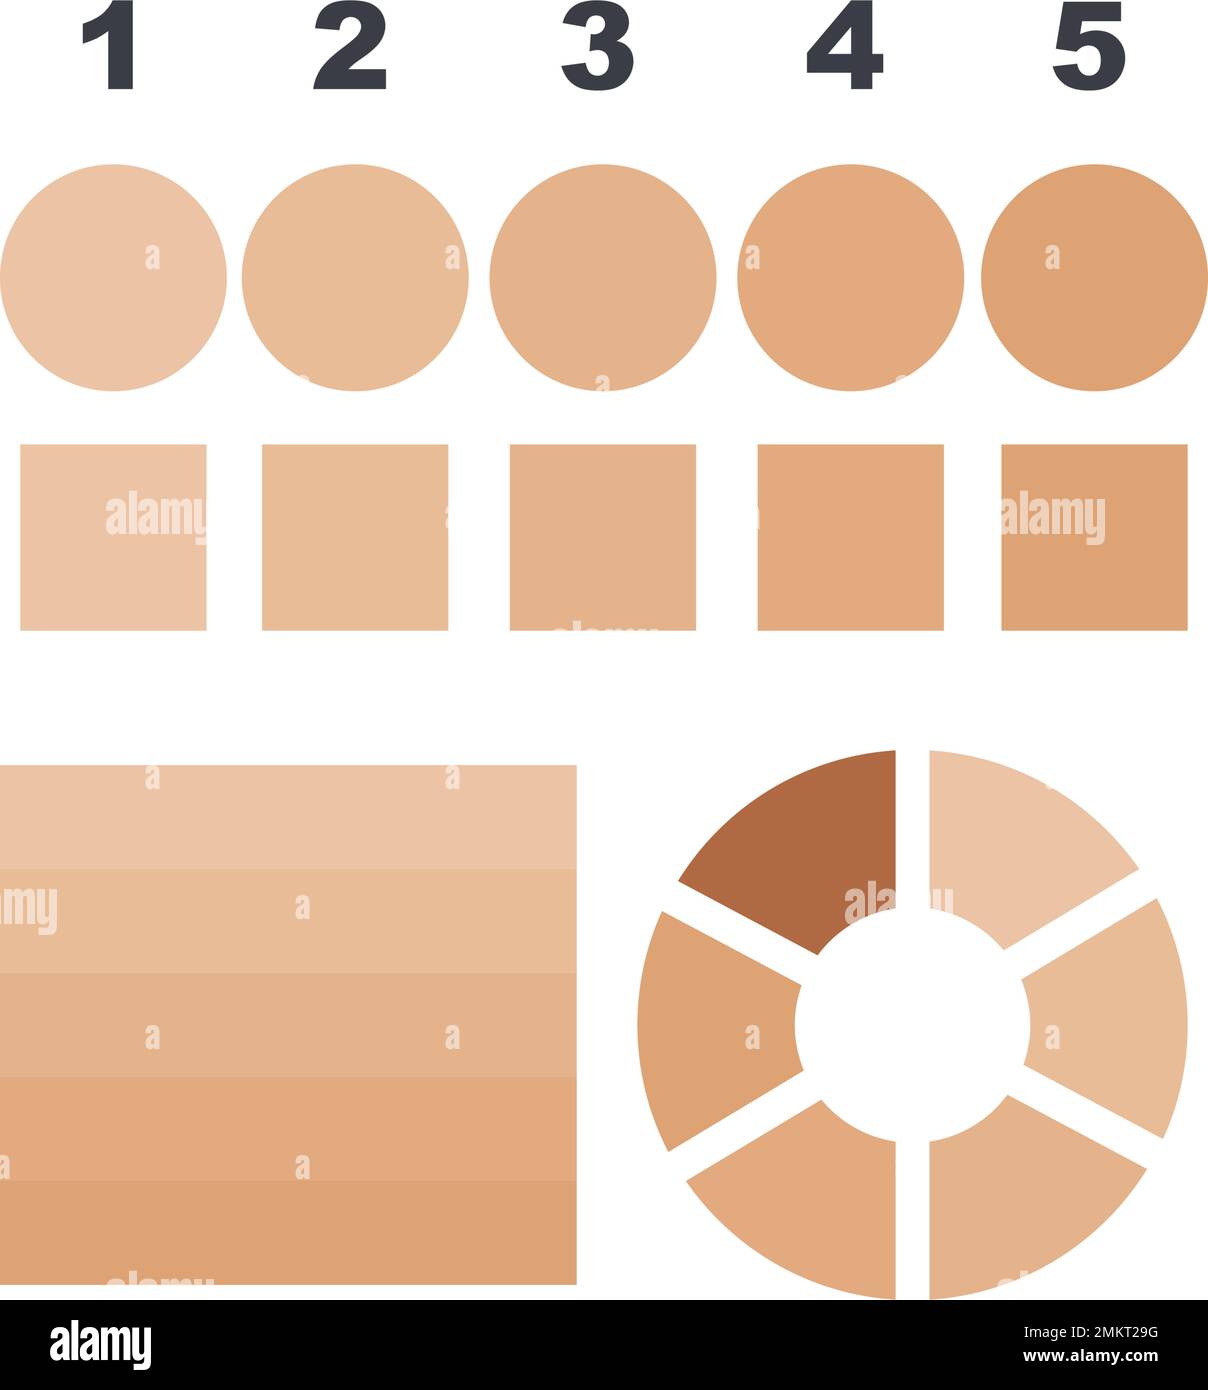 disegno vettoriale dell'icona del livello della tavolozza dei colori della pelle Illustrazione Vettoriale